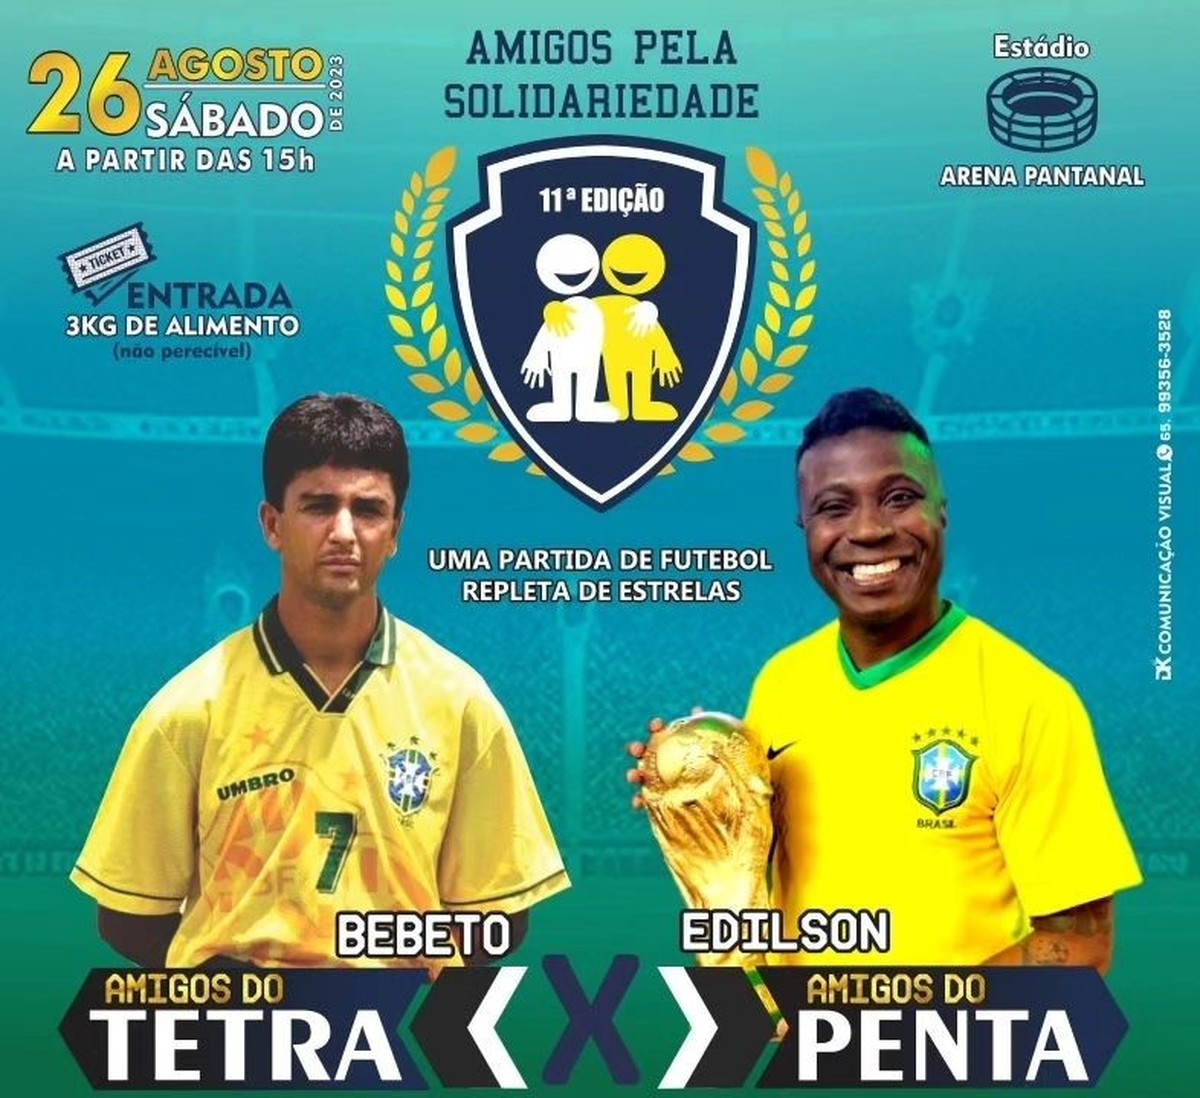 Brasil Juniors Cup inicia com programação repleta de jogos